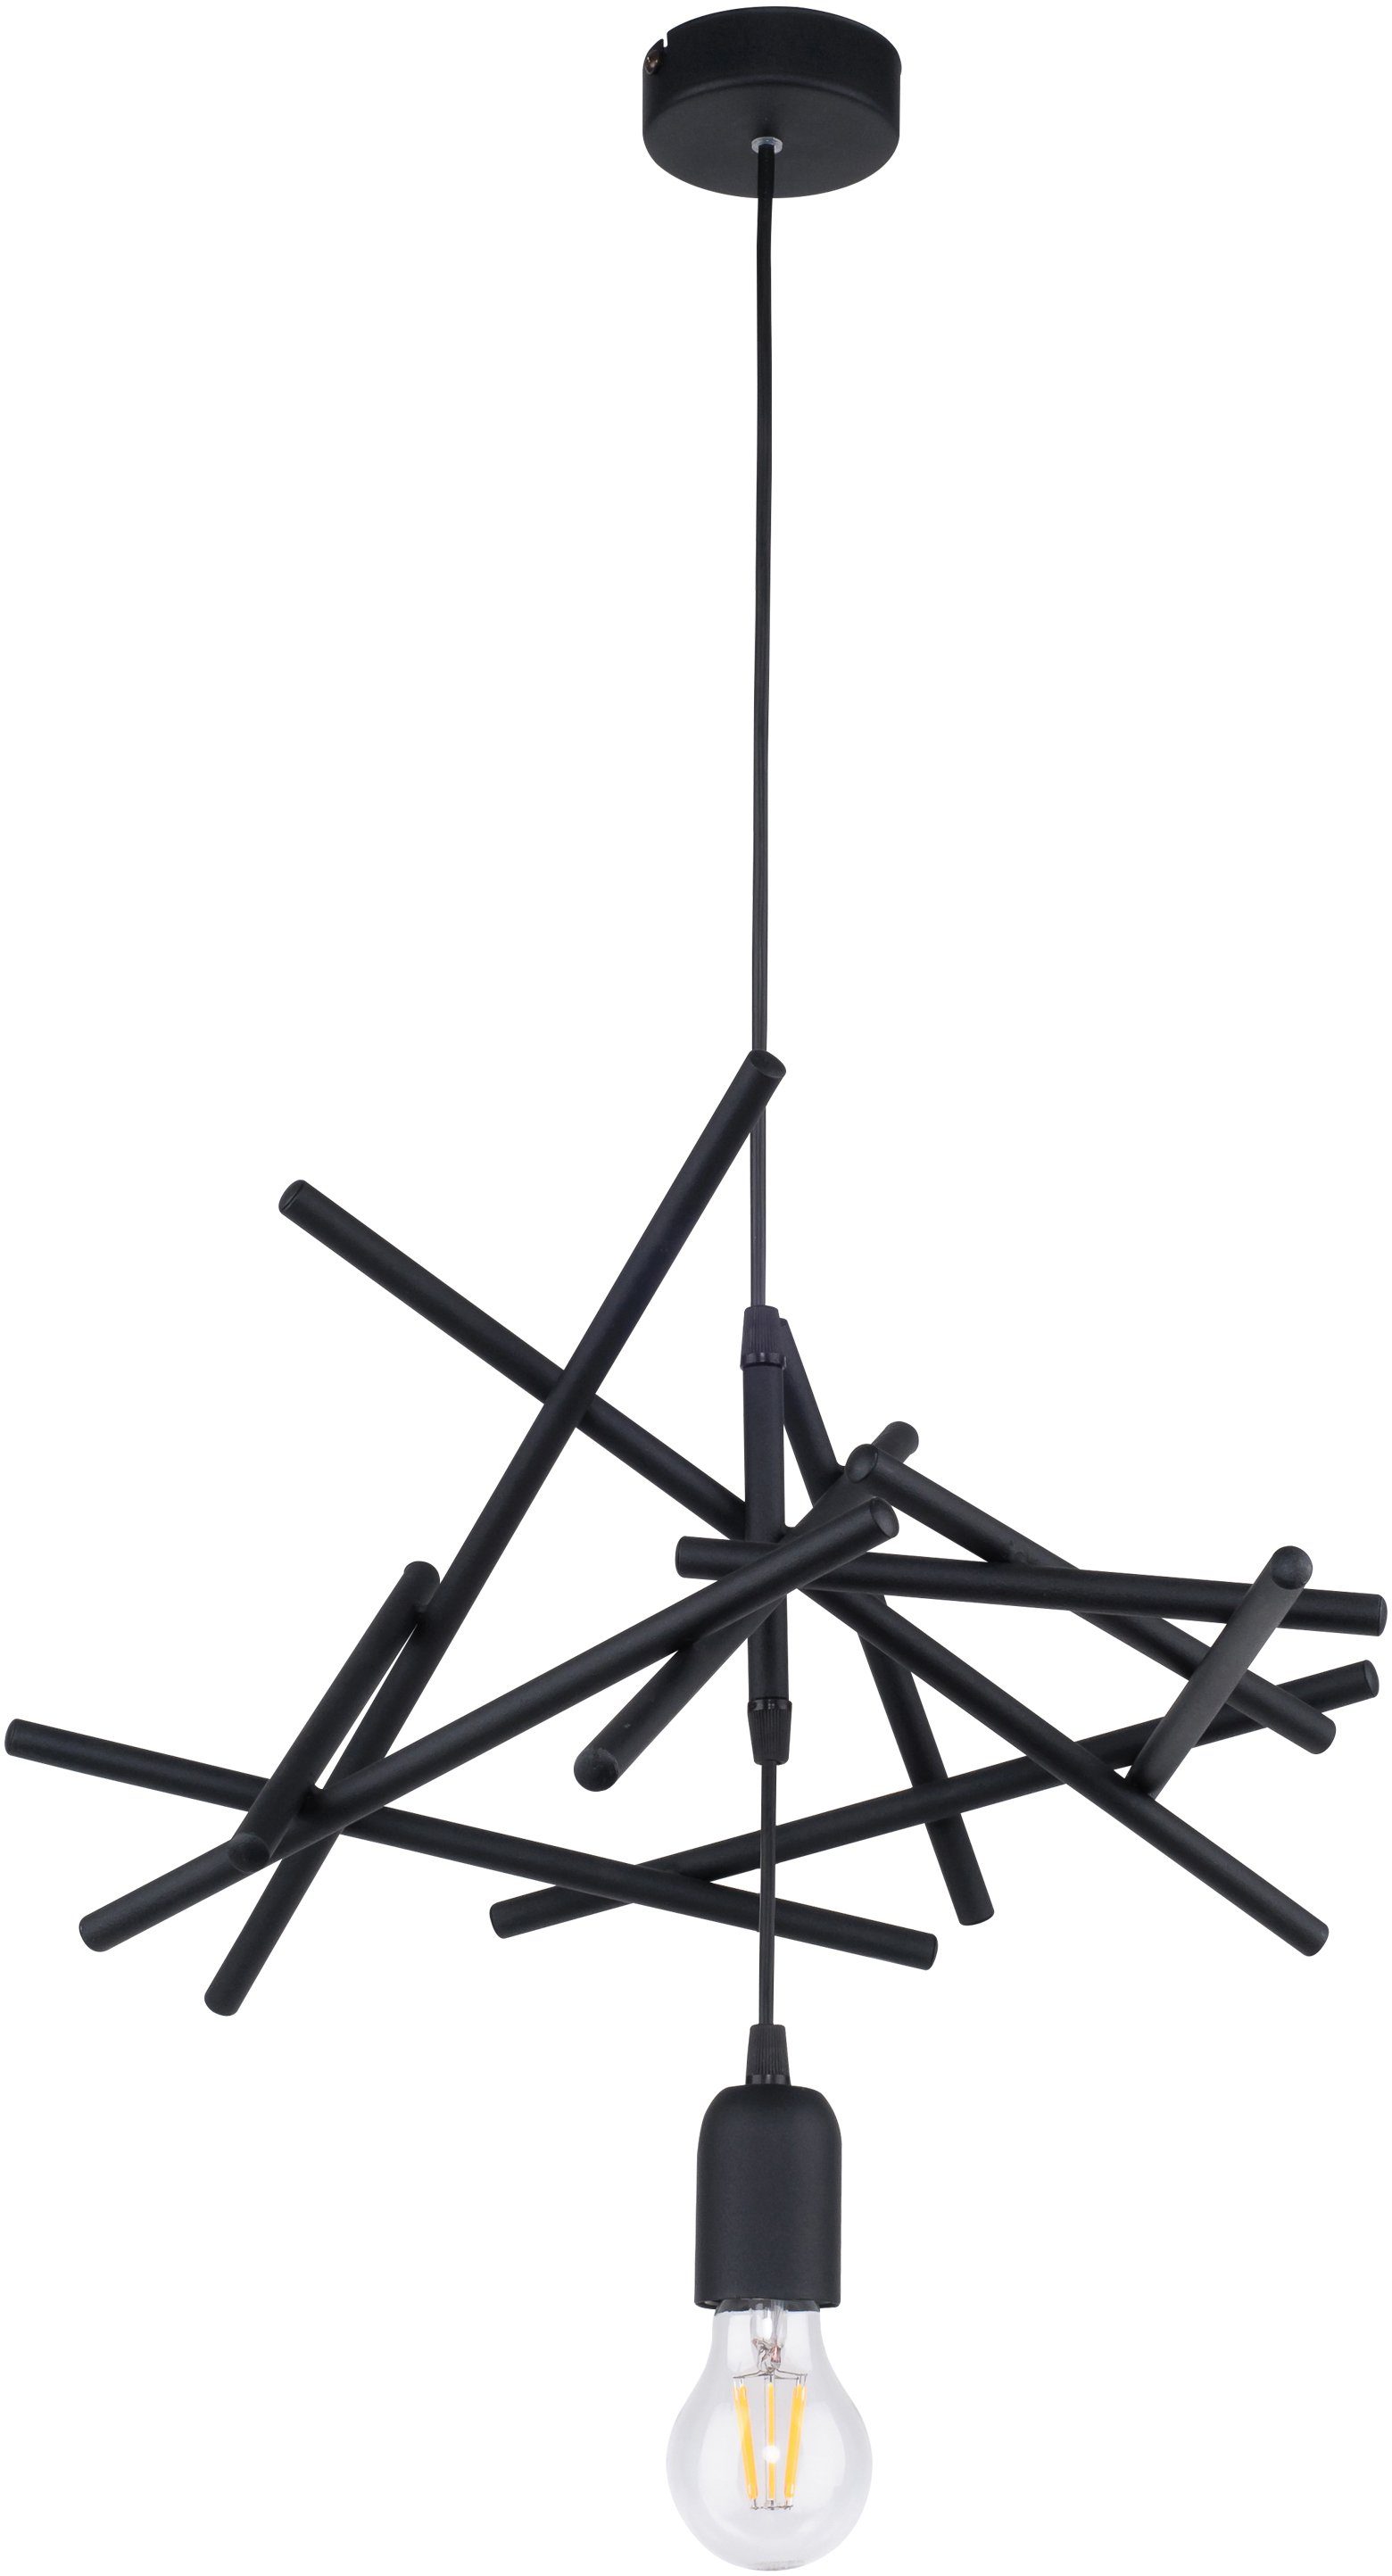 spot light hanglamp glenn van metaal, origineel design, bijpassende lm e27, made in europe (1 stuk) zwart